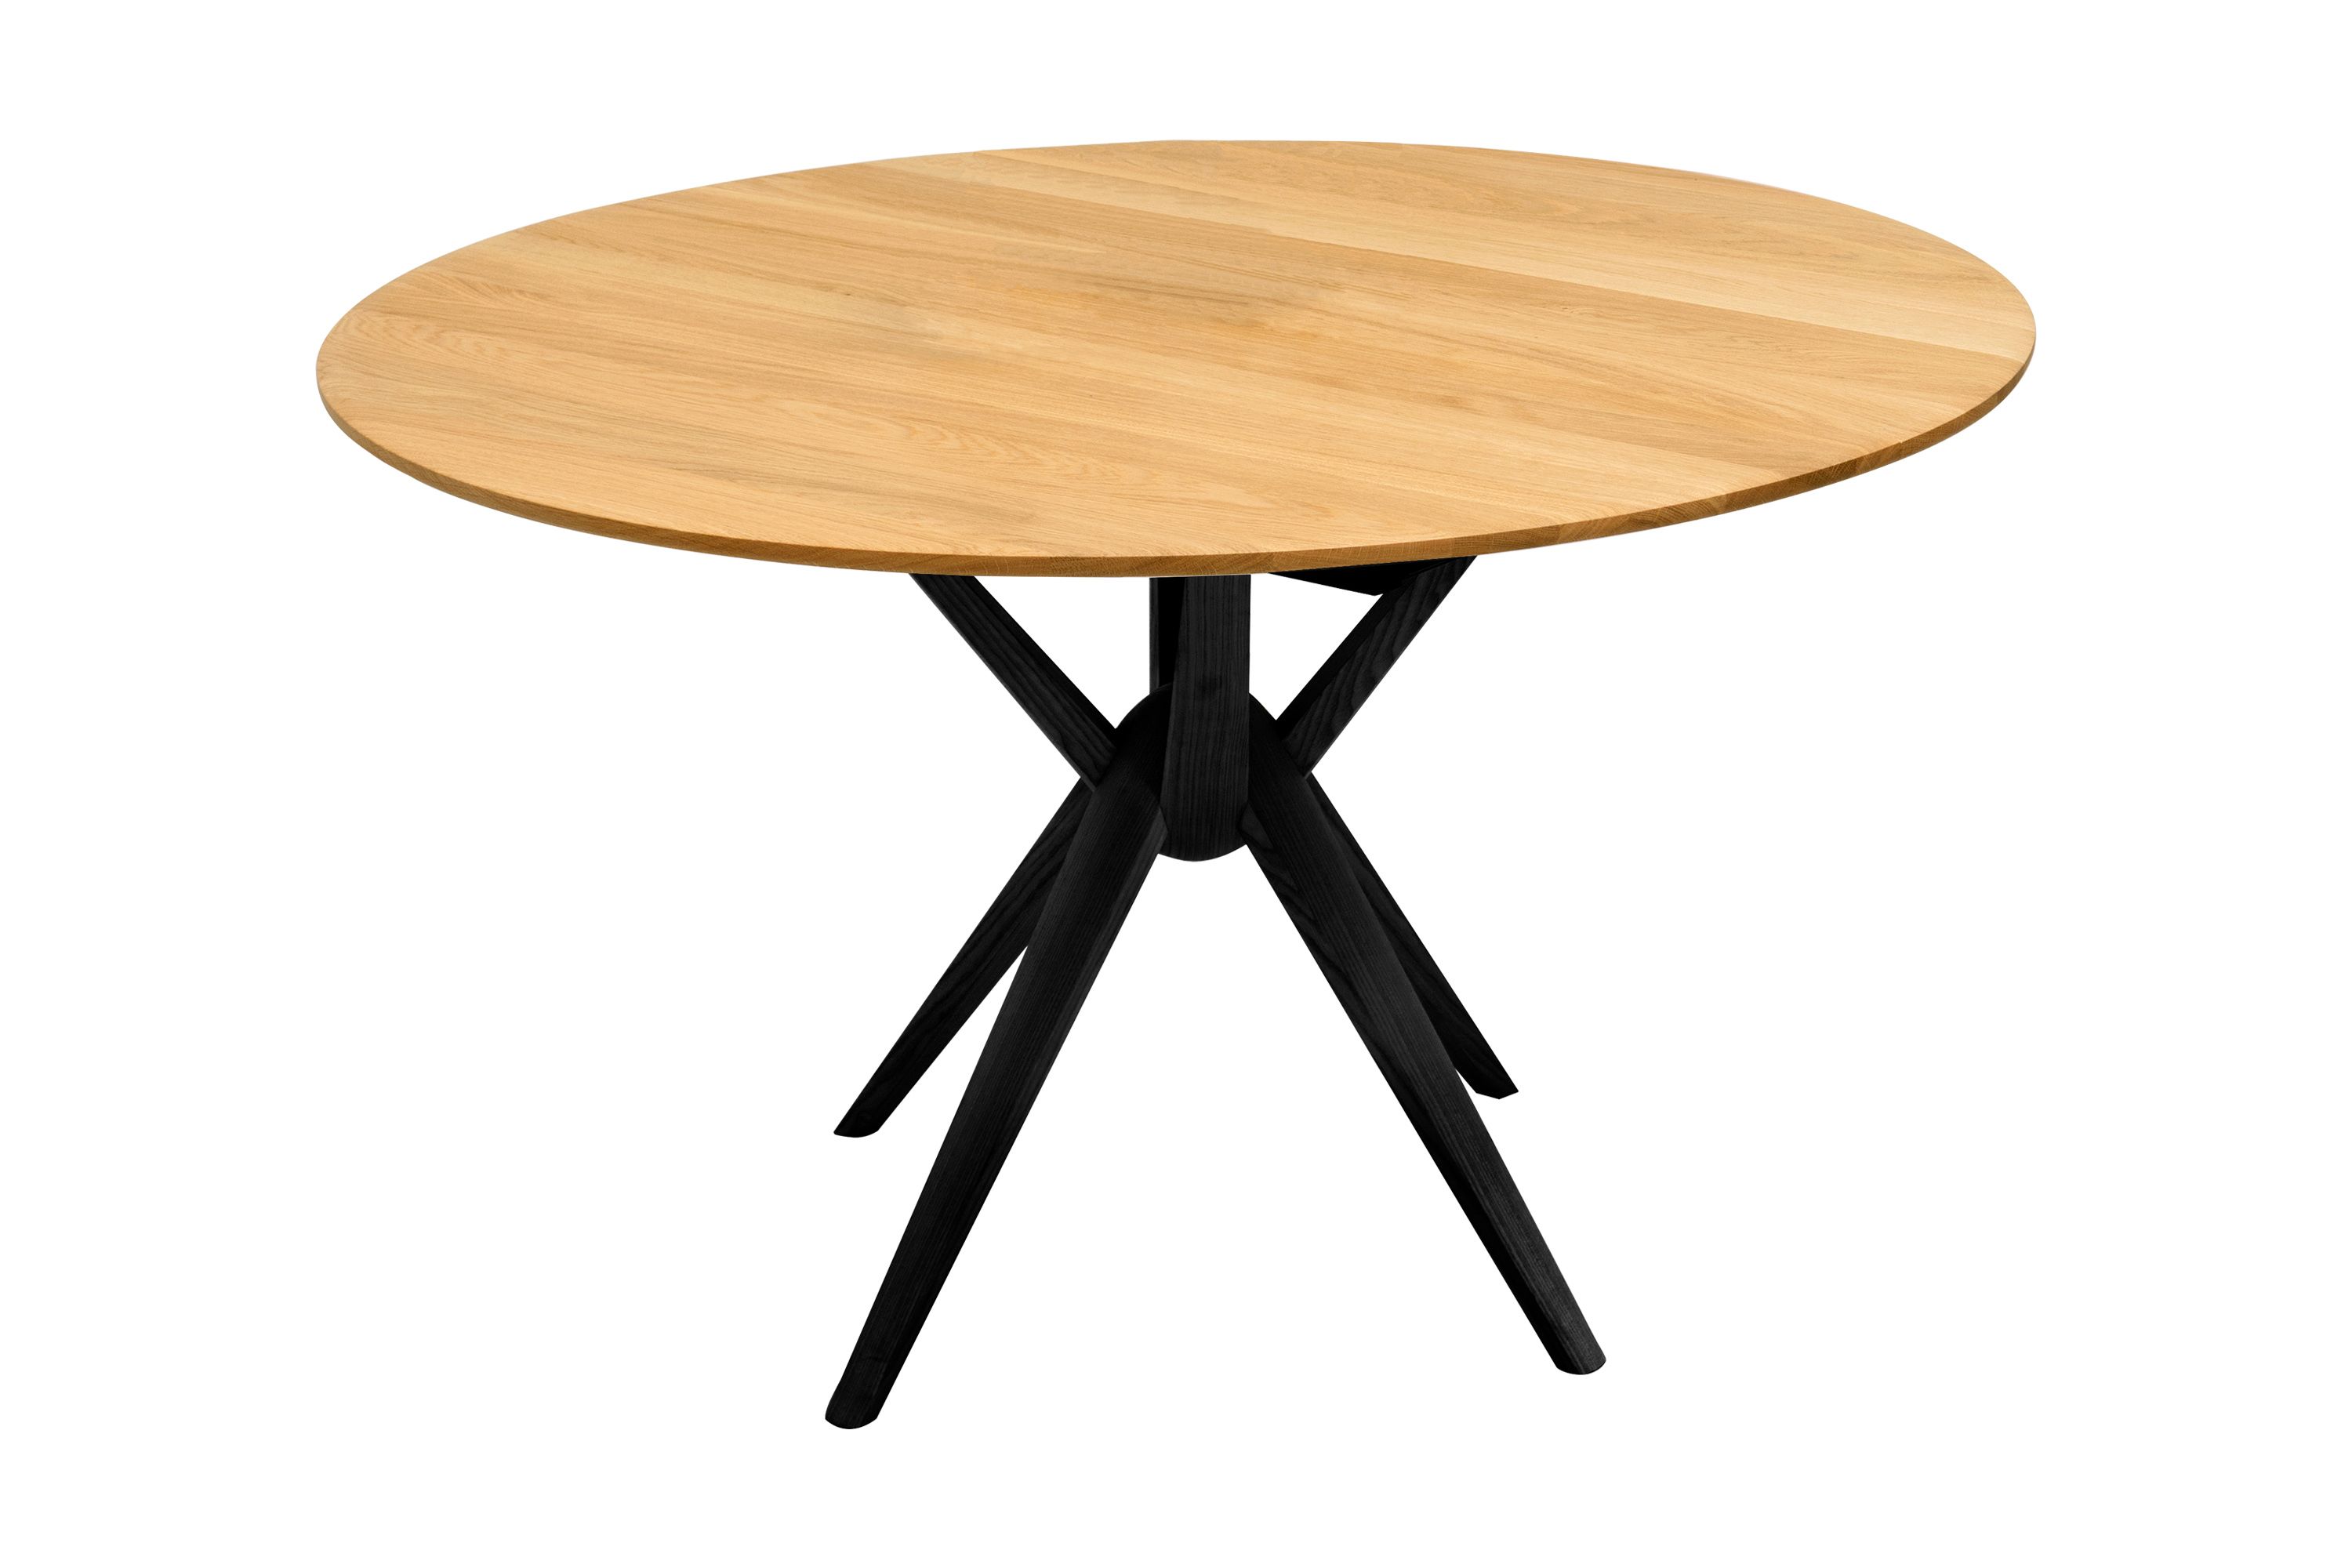 Esstisch Eiche rund ausziehbar mit schwarzen Tischbeinen - Esstisch Gendt 2 rund